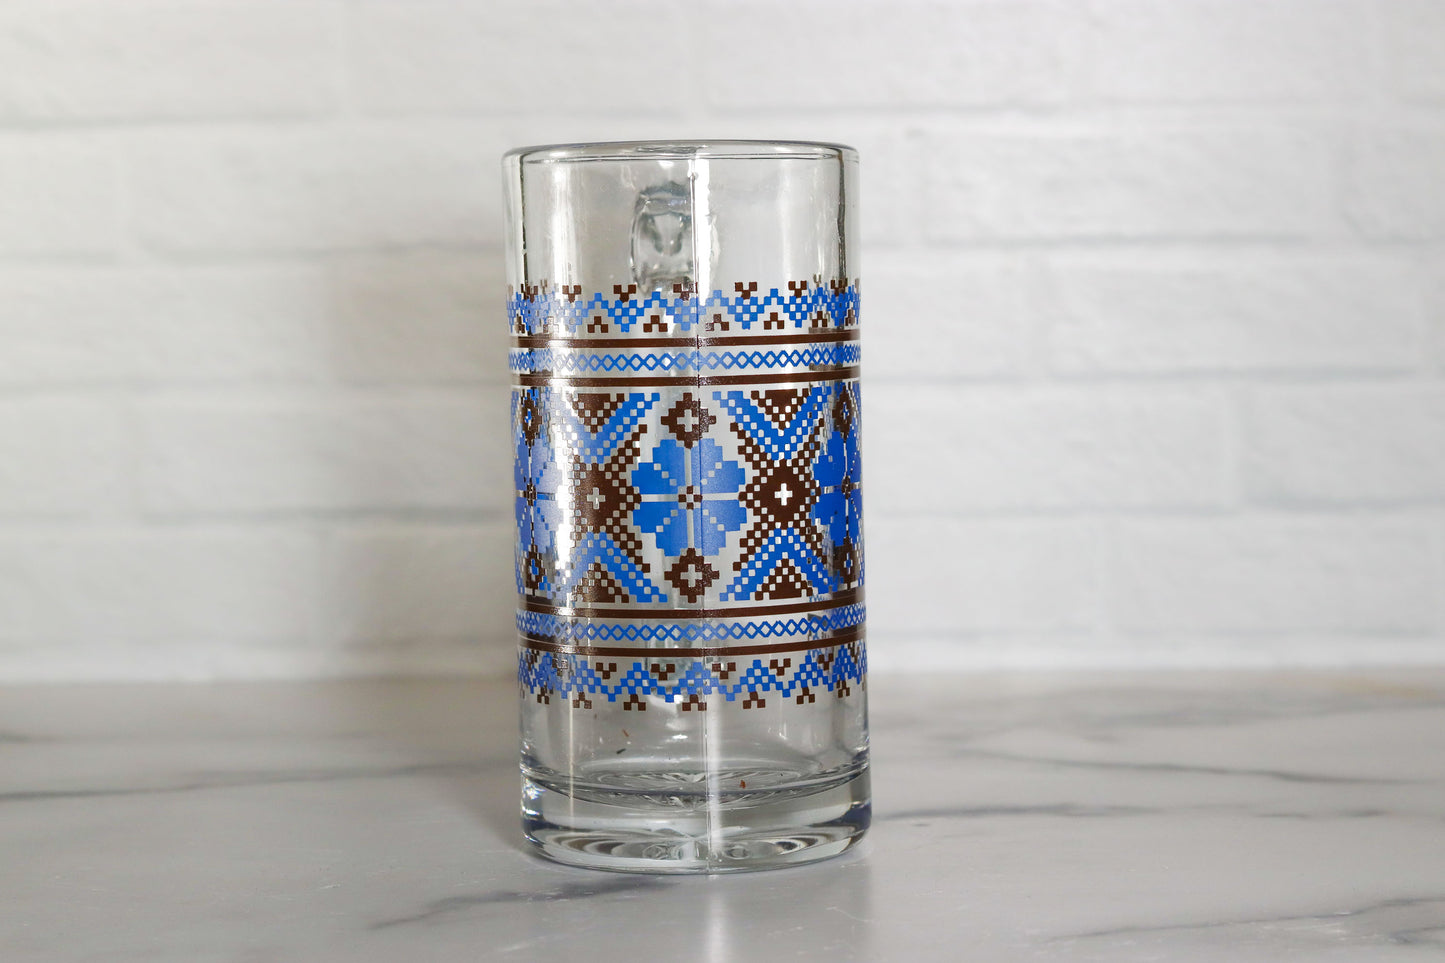 Tall Ukrainian Glass Mug - Handmade with Traditional Designs